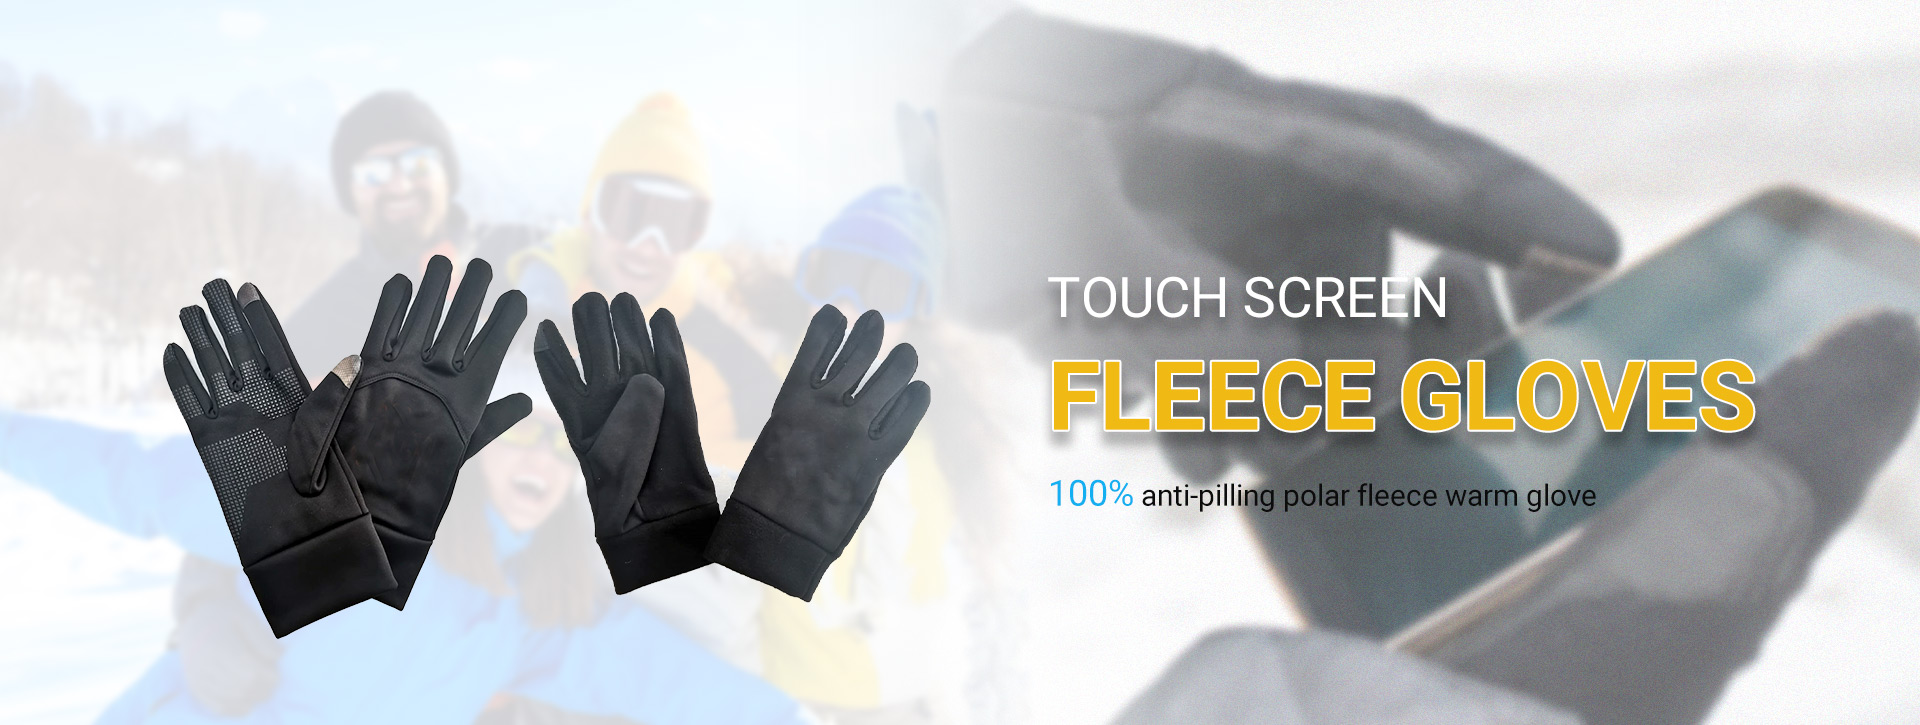 Touch Screen Fleece Glove